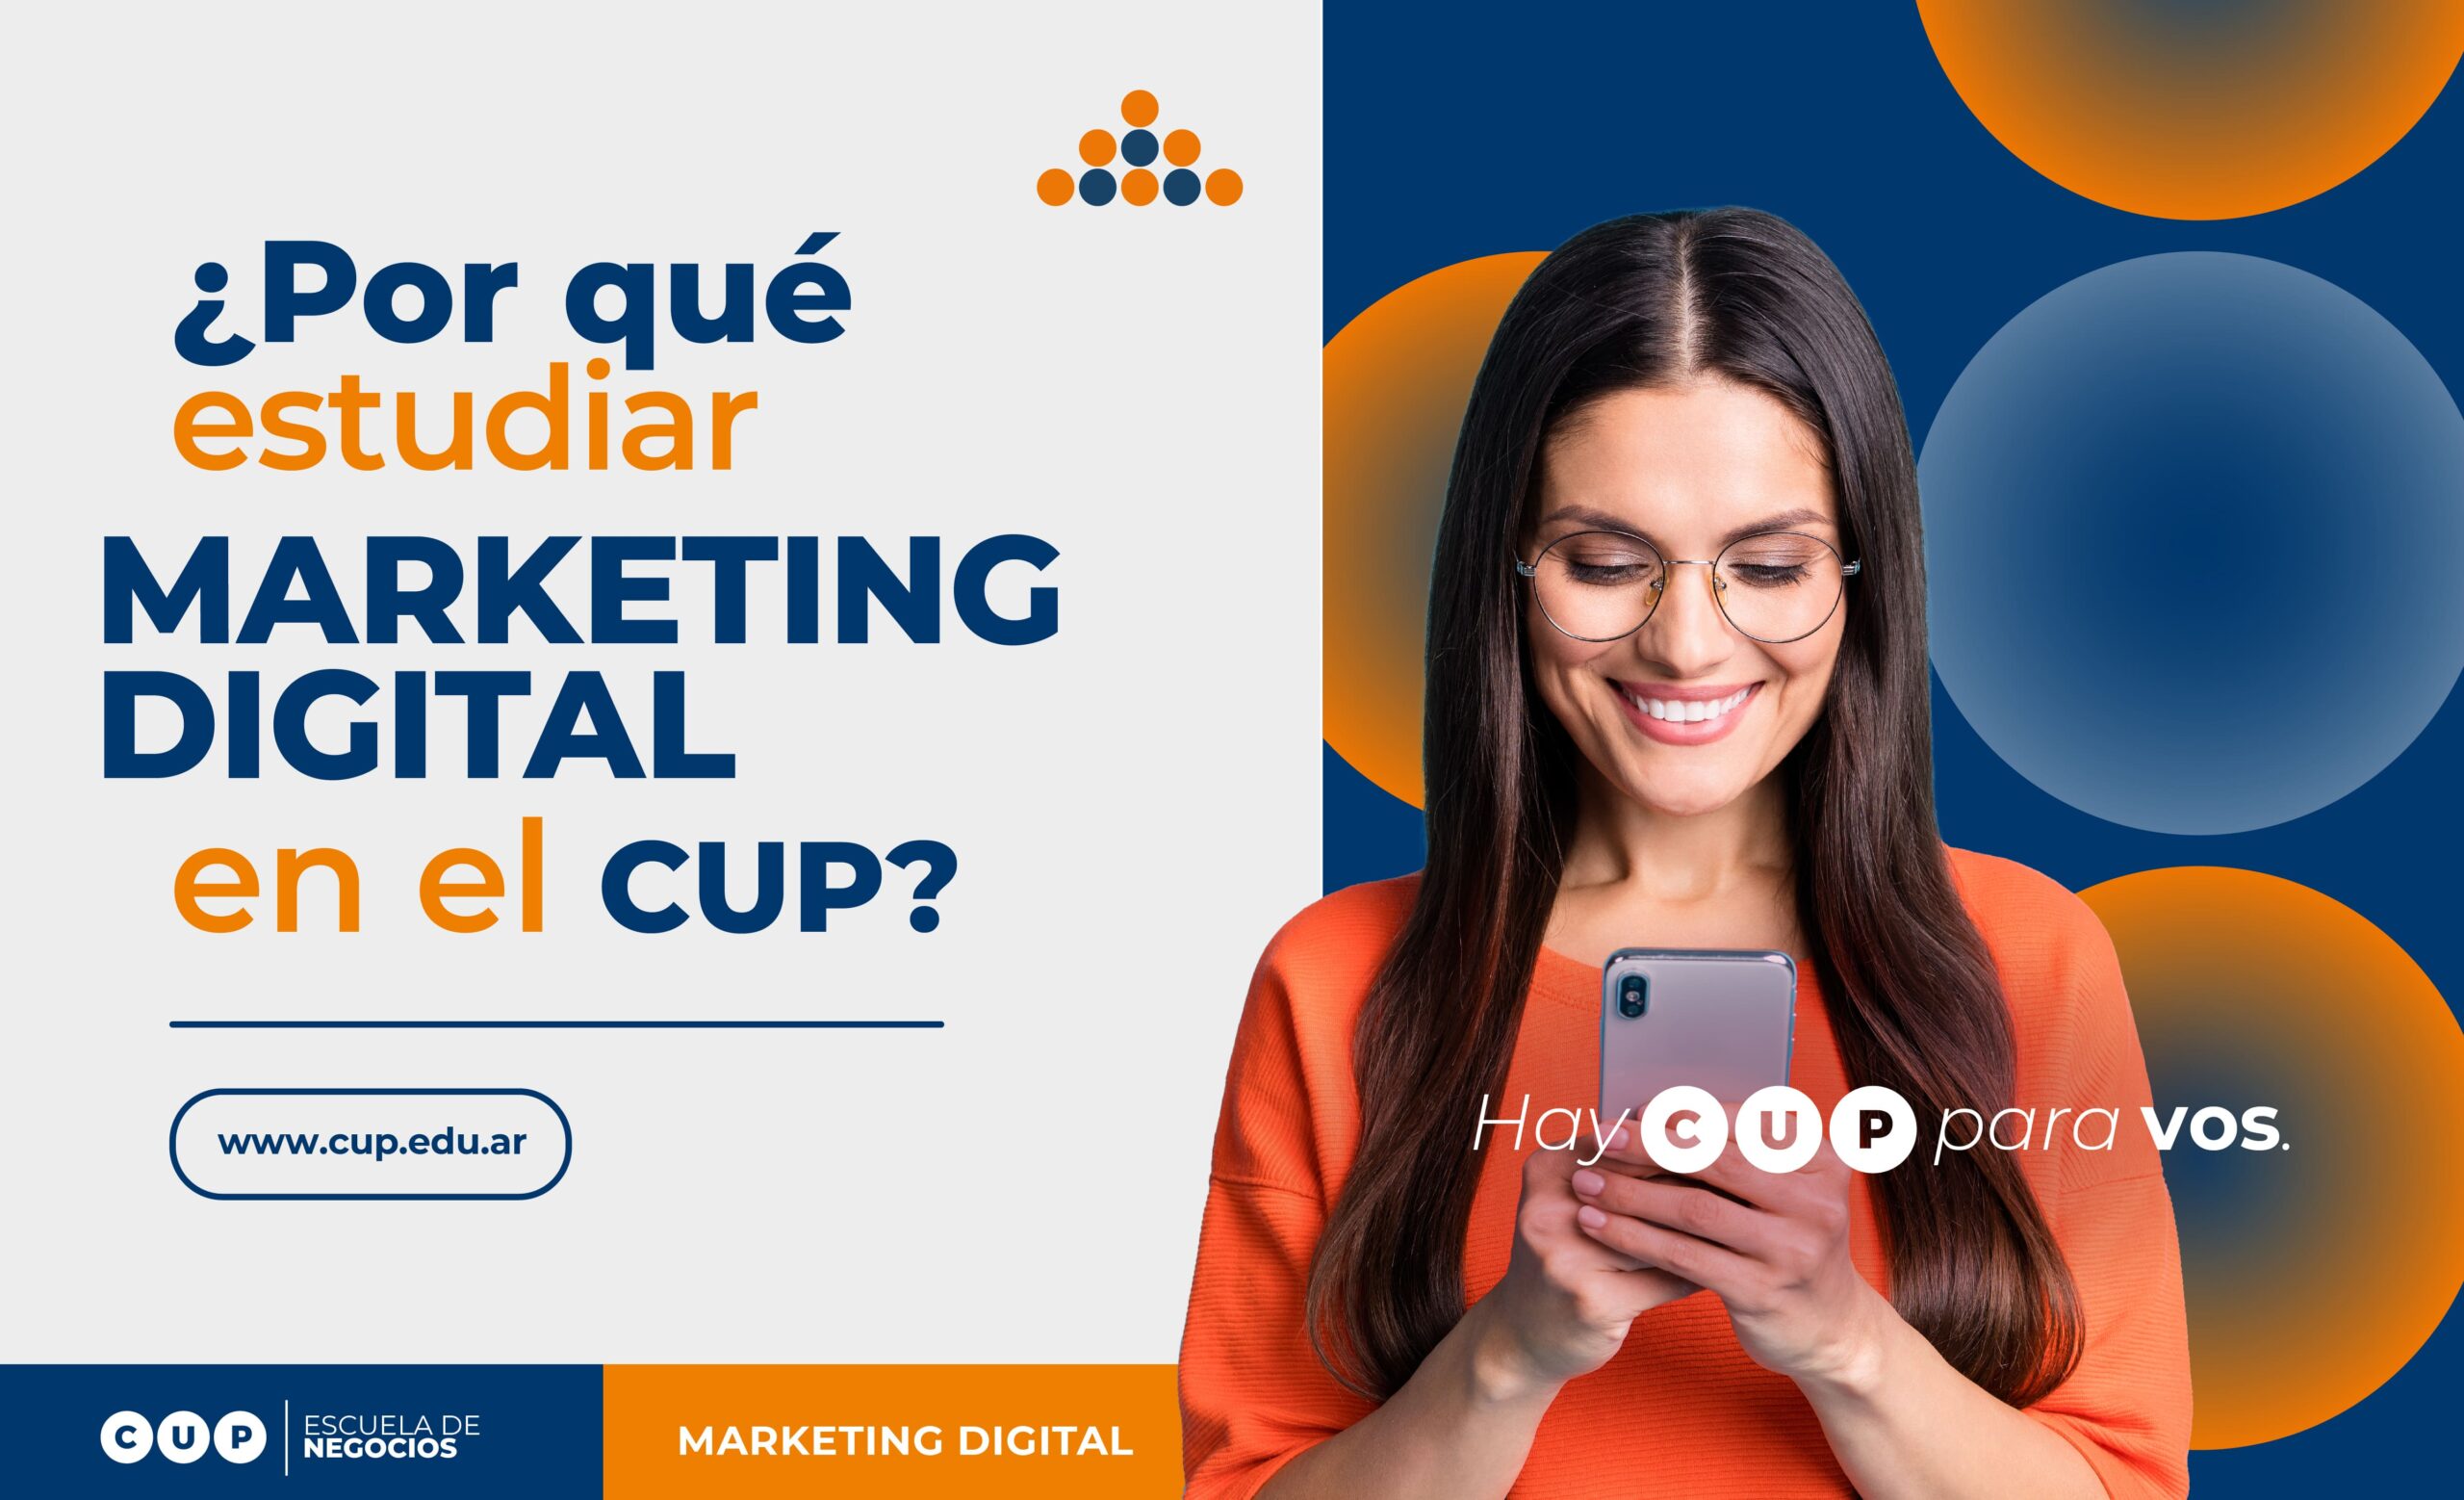 ¿Por qué estudiar Marketing Digital en el CUP?